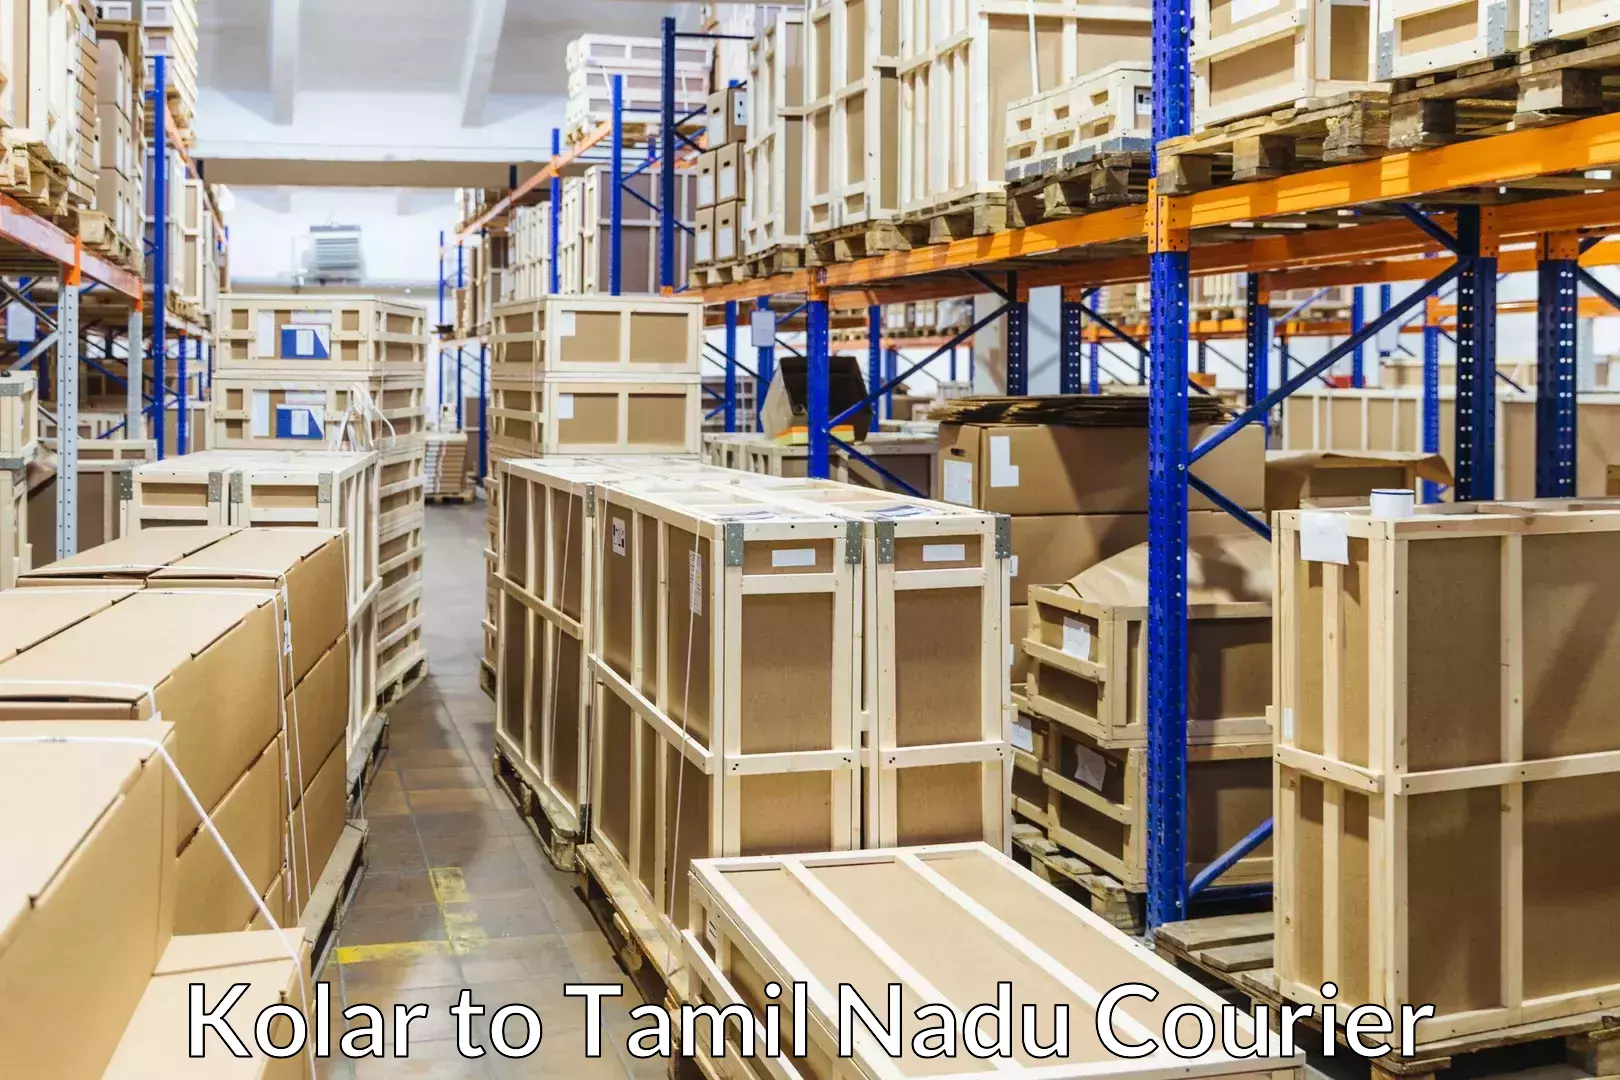 Furniture moving experts Kolar to Tamil Nadu